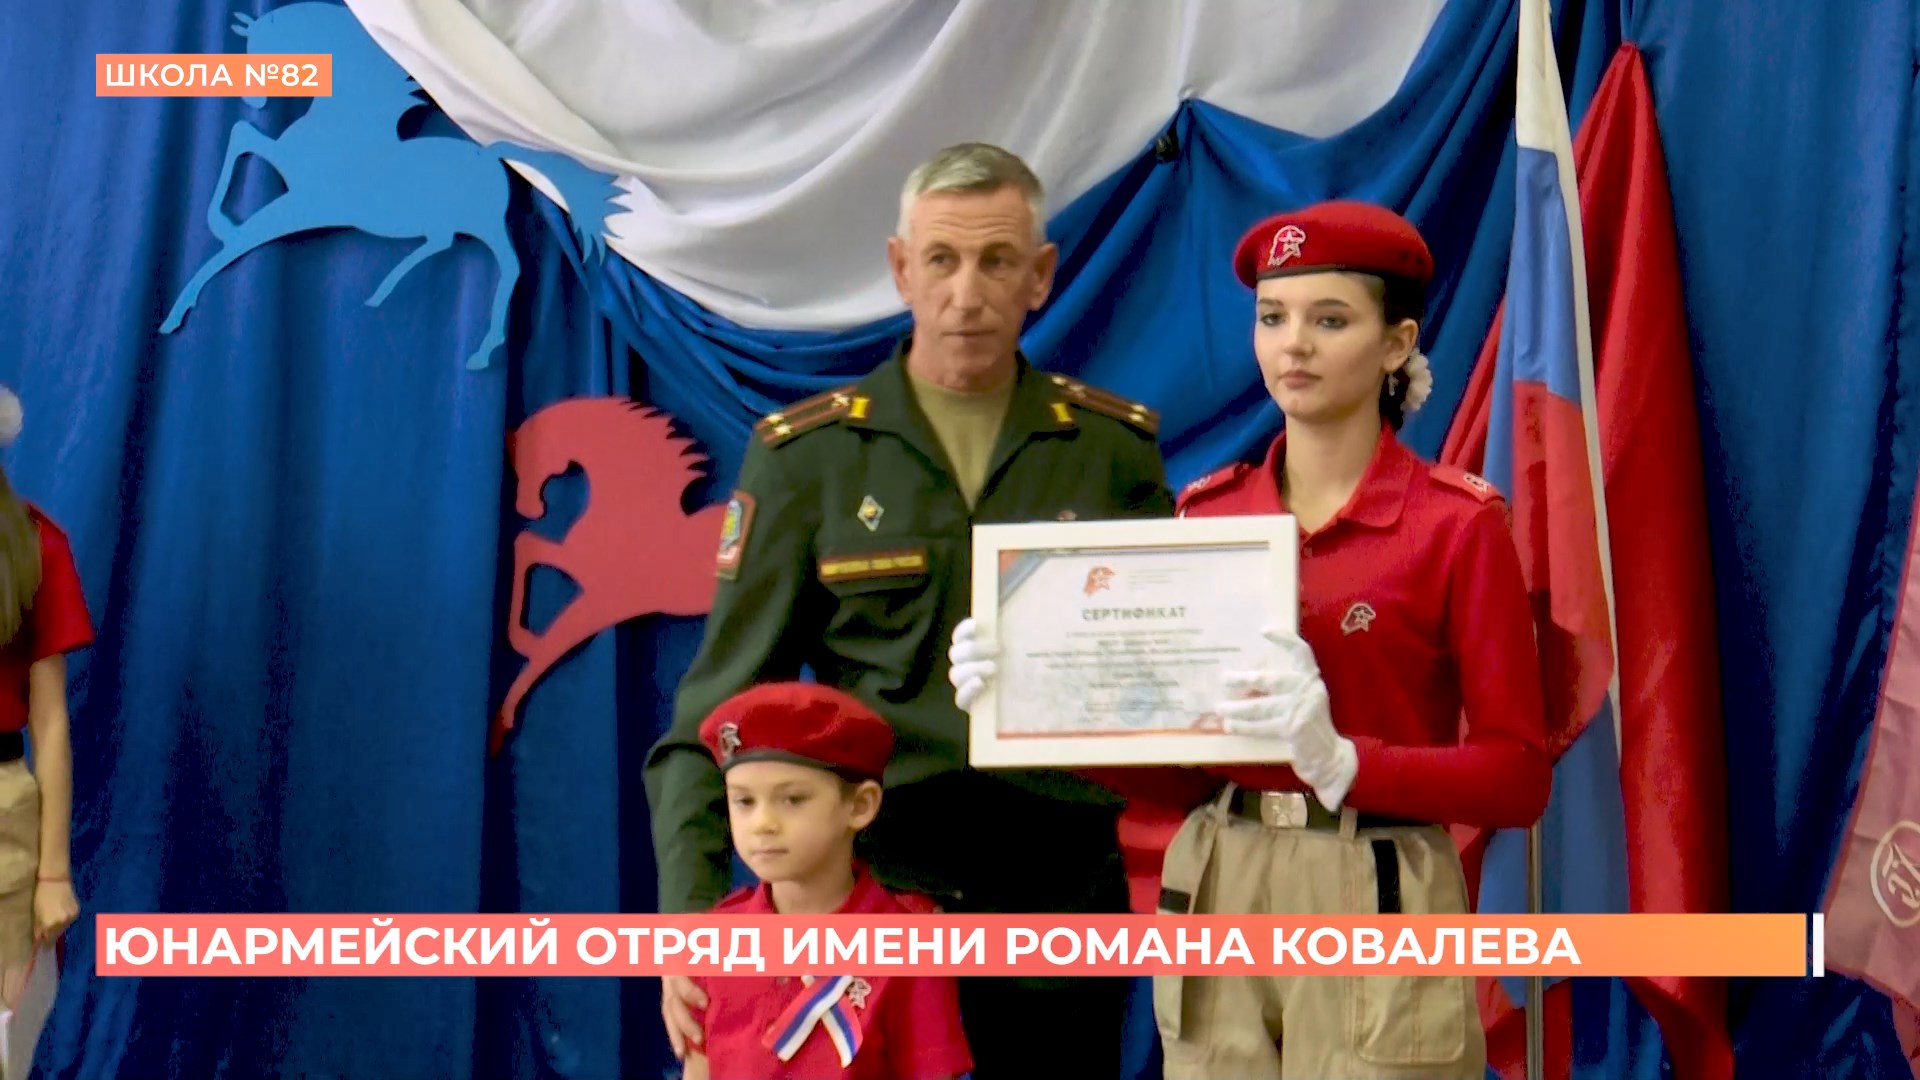 Юнармейскому отряду 82-й школы присвоено имя героя СВО Романа Ковалёва